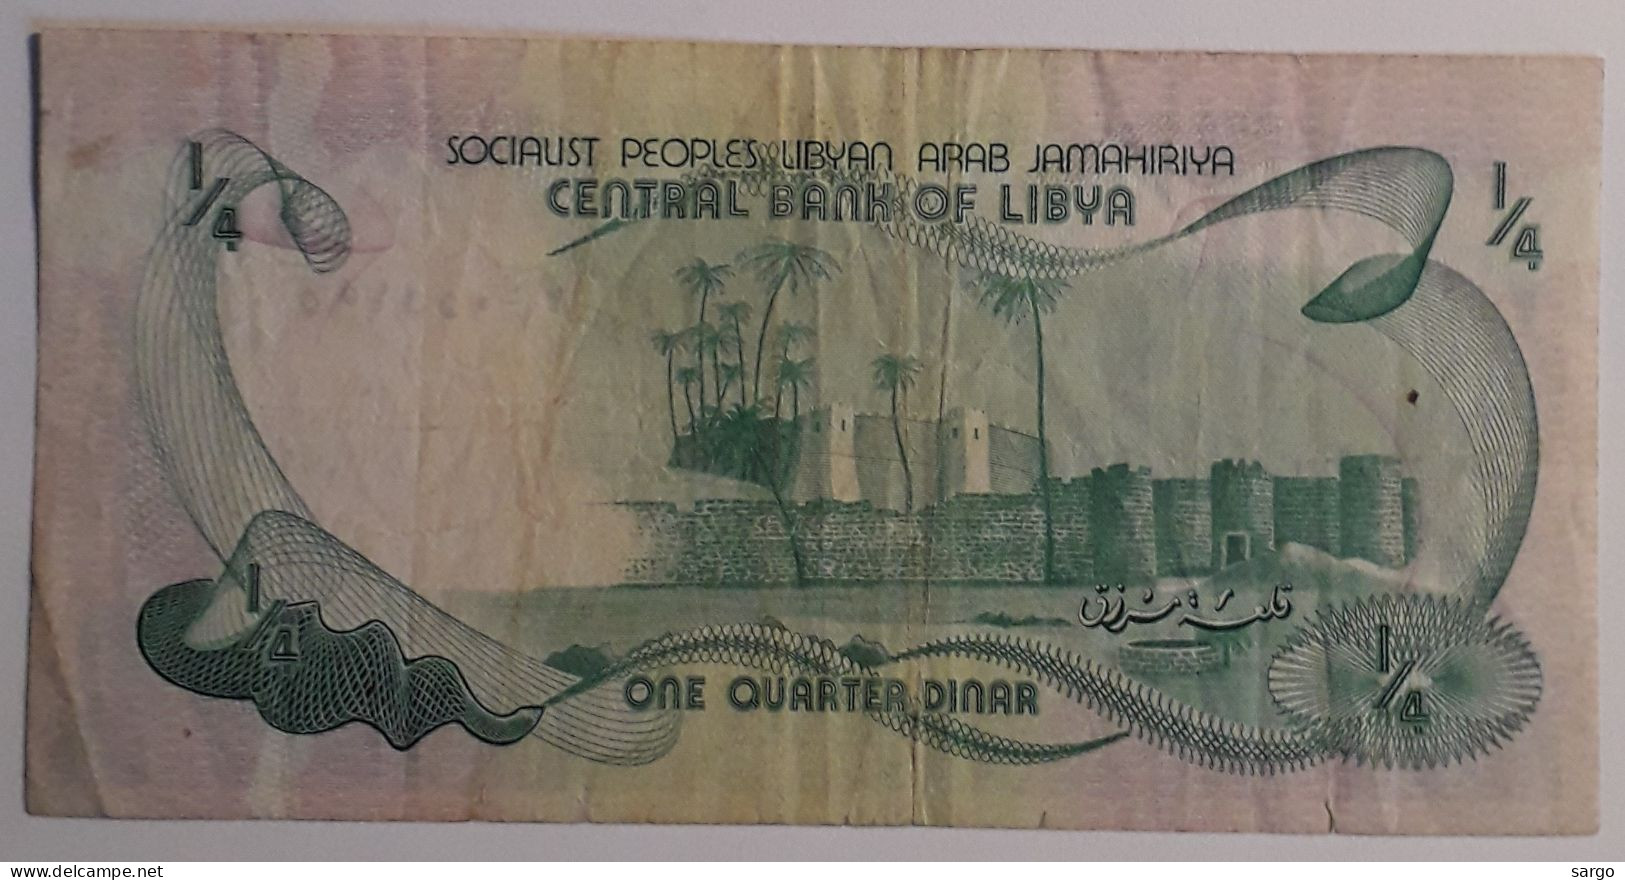 LIBYA - 1/4 DINAR - 1981 - CIRC - P 42a - BANKNOTES - PAPER MONEY - CARTAMONETA - - Libya